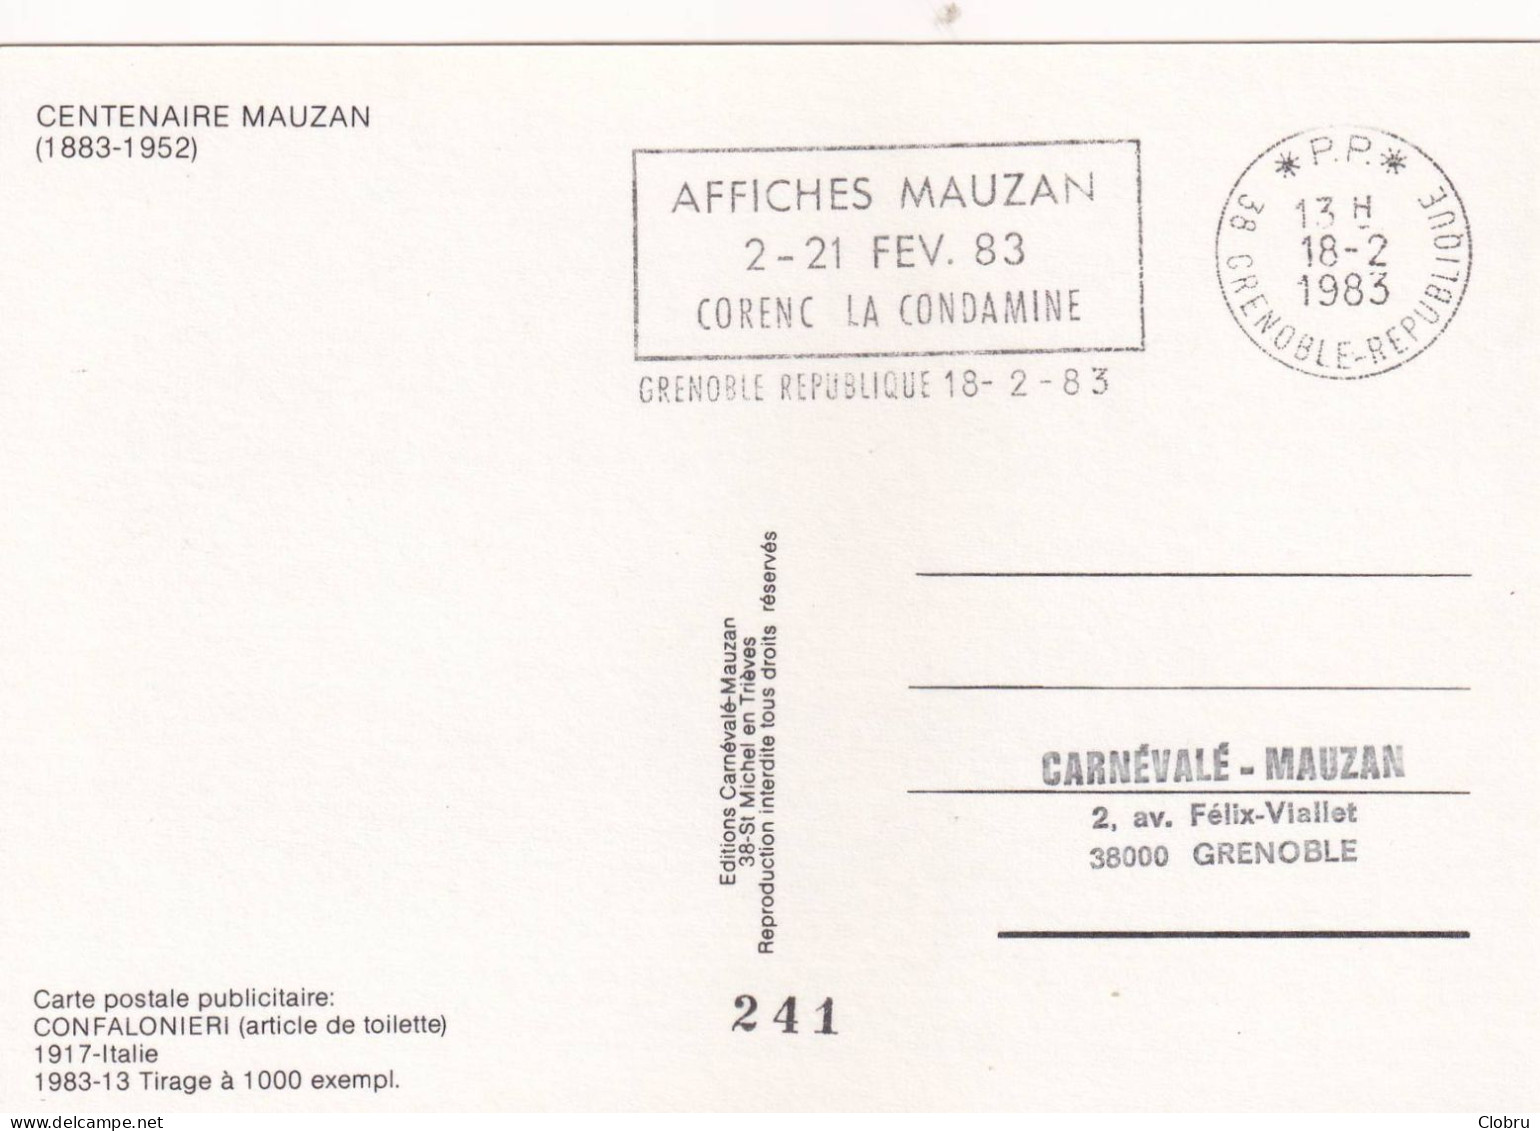 Centenaire Mauzan, 1983, Carte Postale Publicitaire: Confalonieri (Article De Toilette), Edit Limitée 1000 Exemp: N° 241 - Mauzan, L.A.